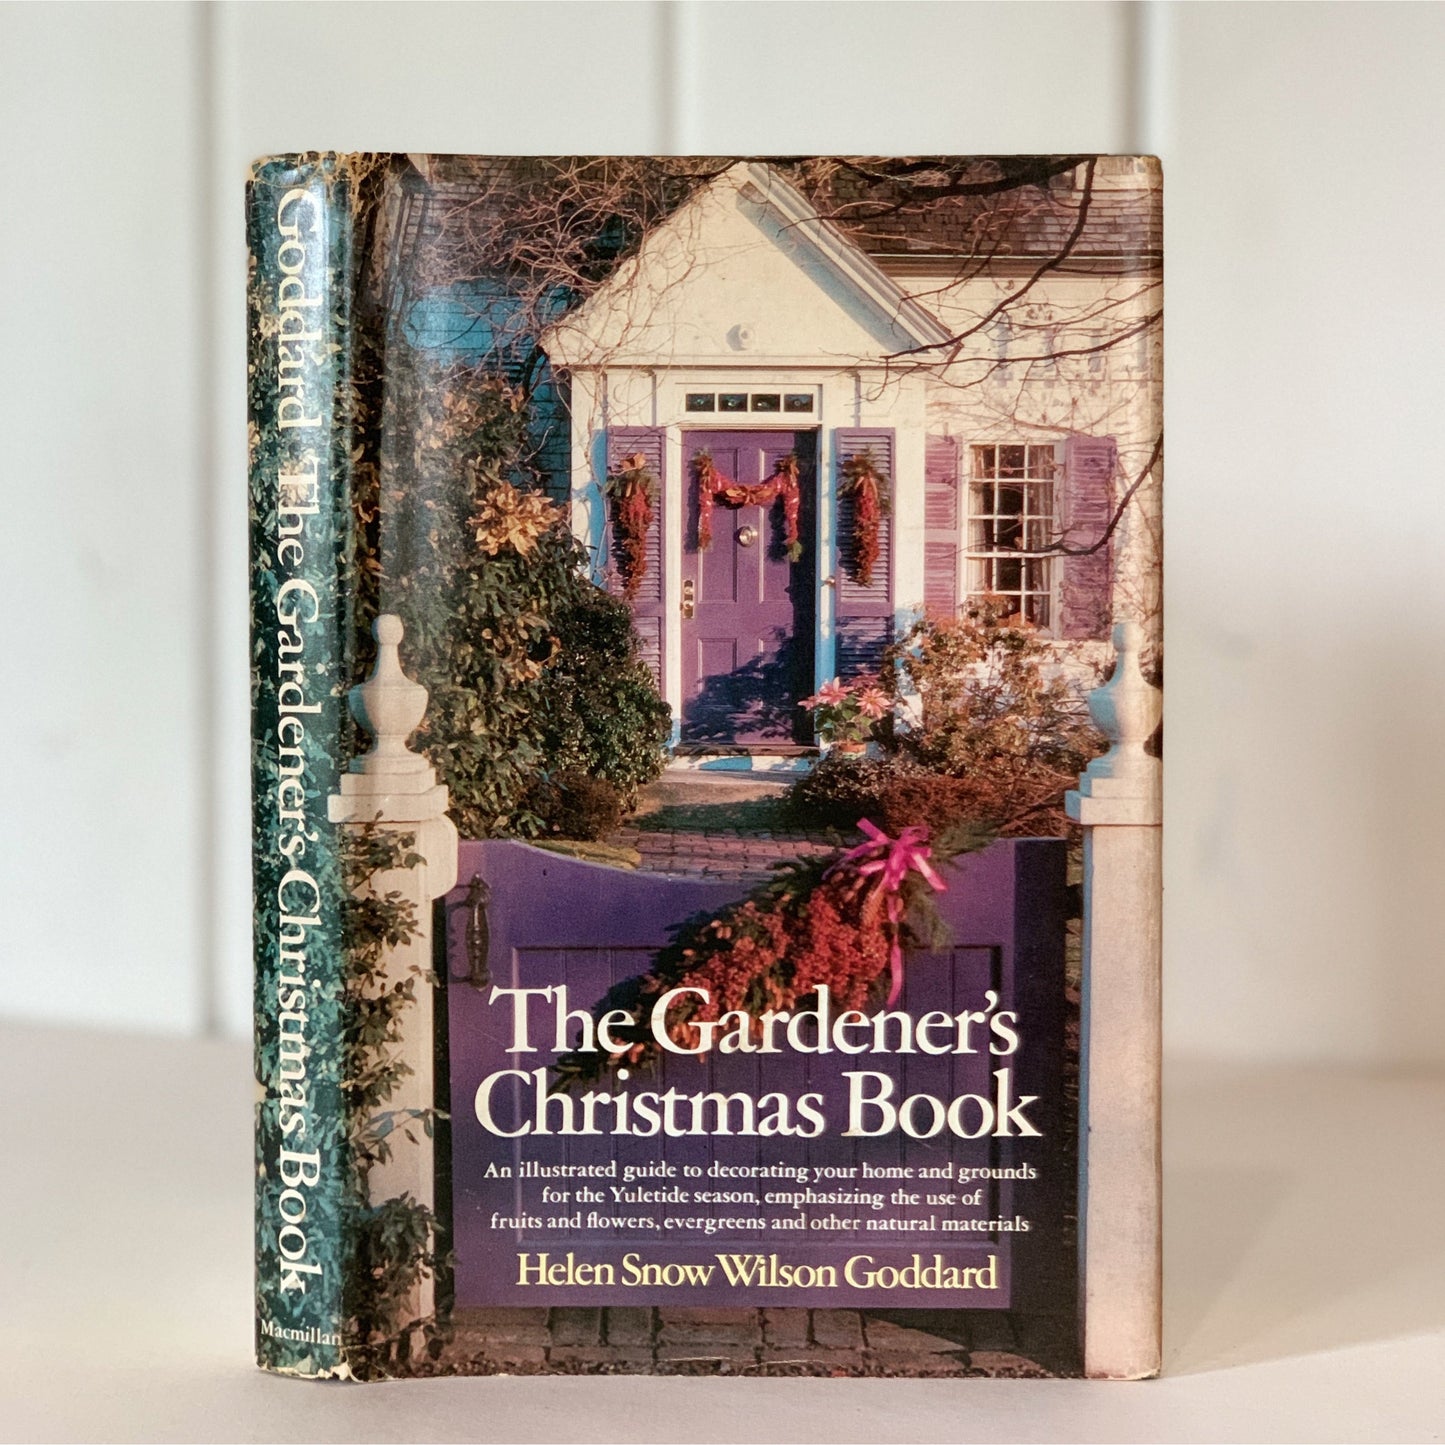 The Gardener's Christmas Book 1967 Hardcover